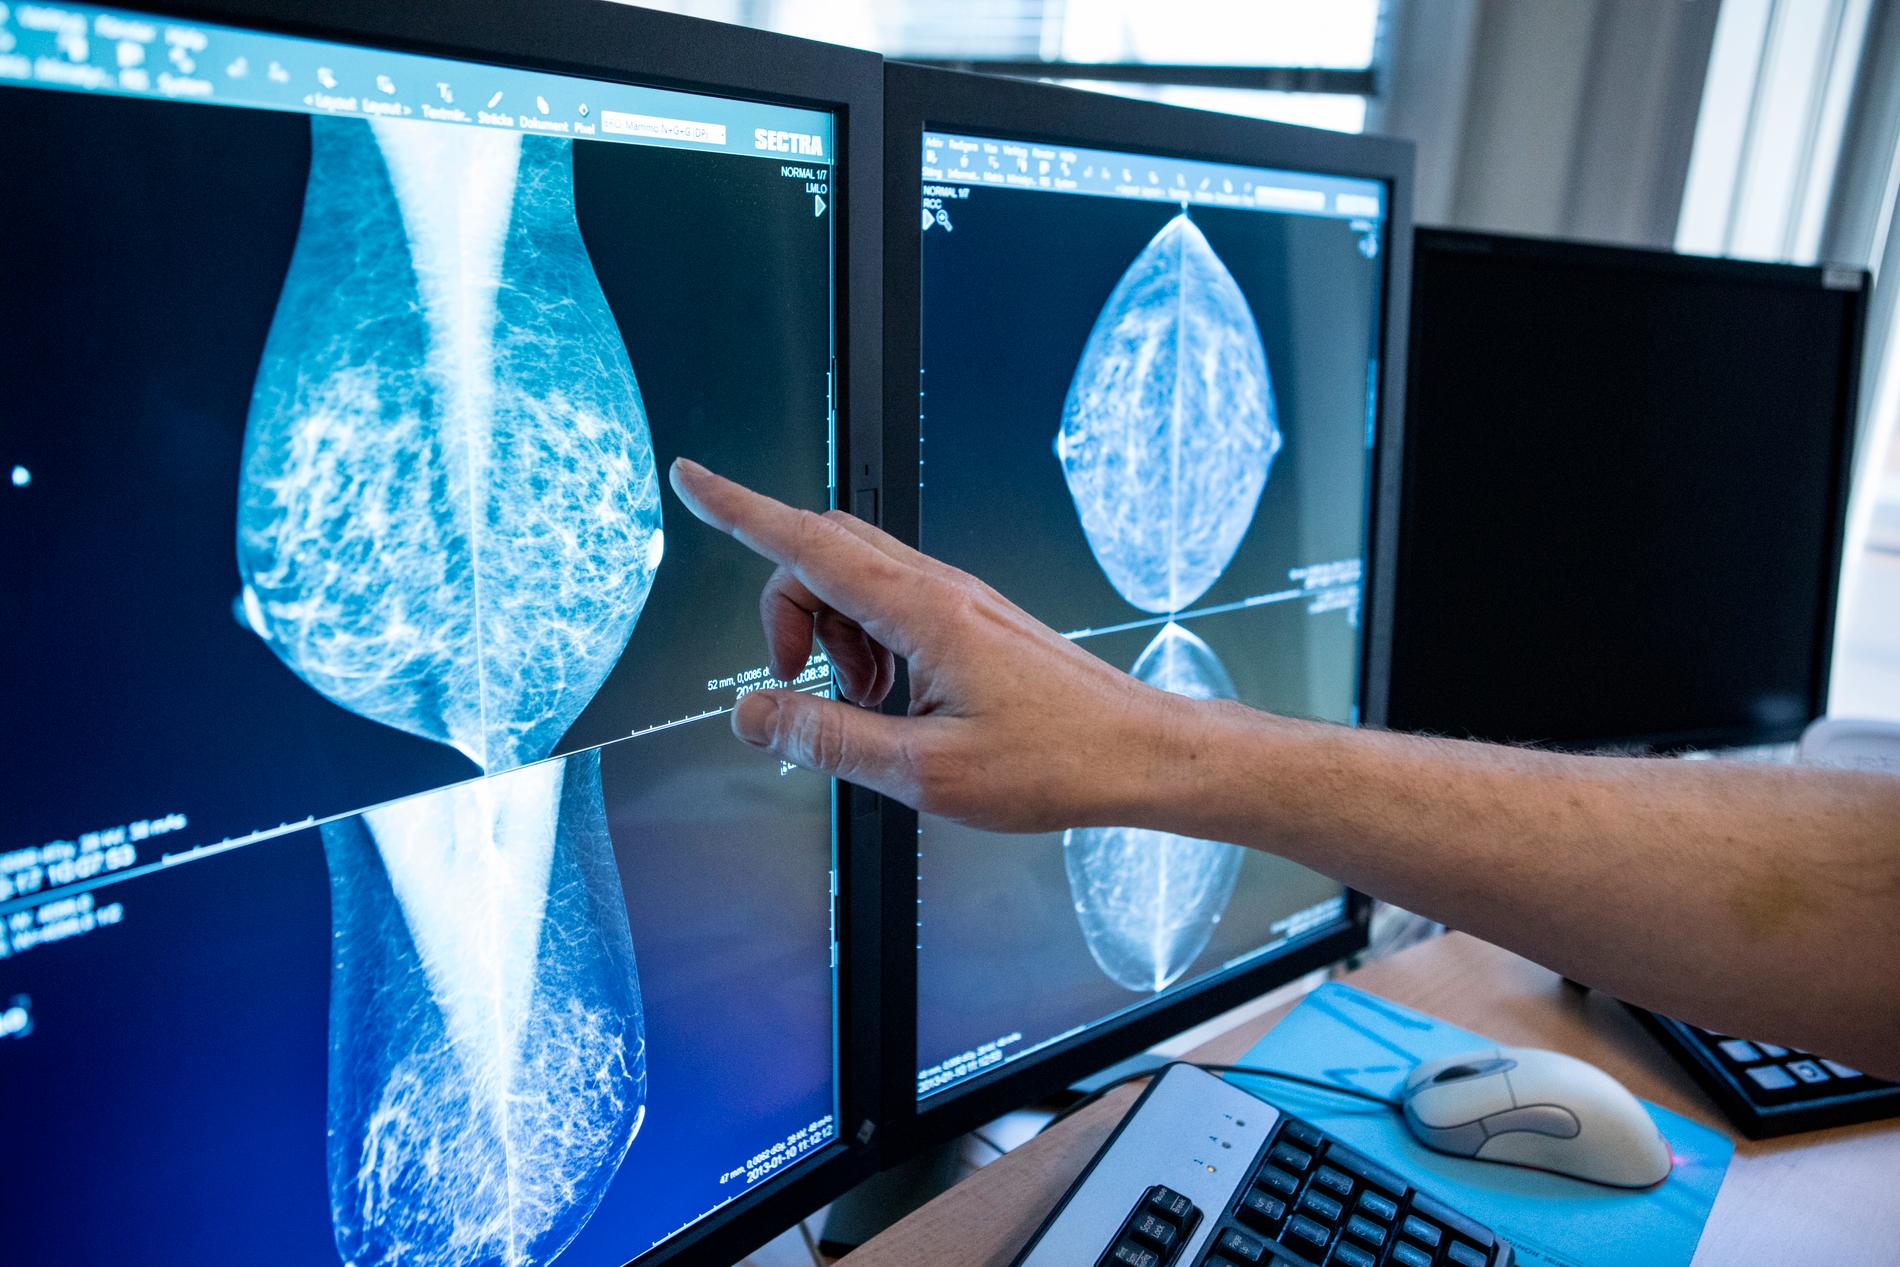 I dag screenas kvinnor för bröstcancer med vanlig 2D-mammografi. Men om alla skulle screenas med 3D skulle fler fall av intervallcancer hittas tidigare, visar en ny svensk studie.